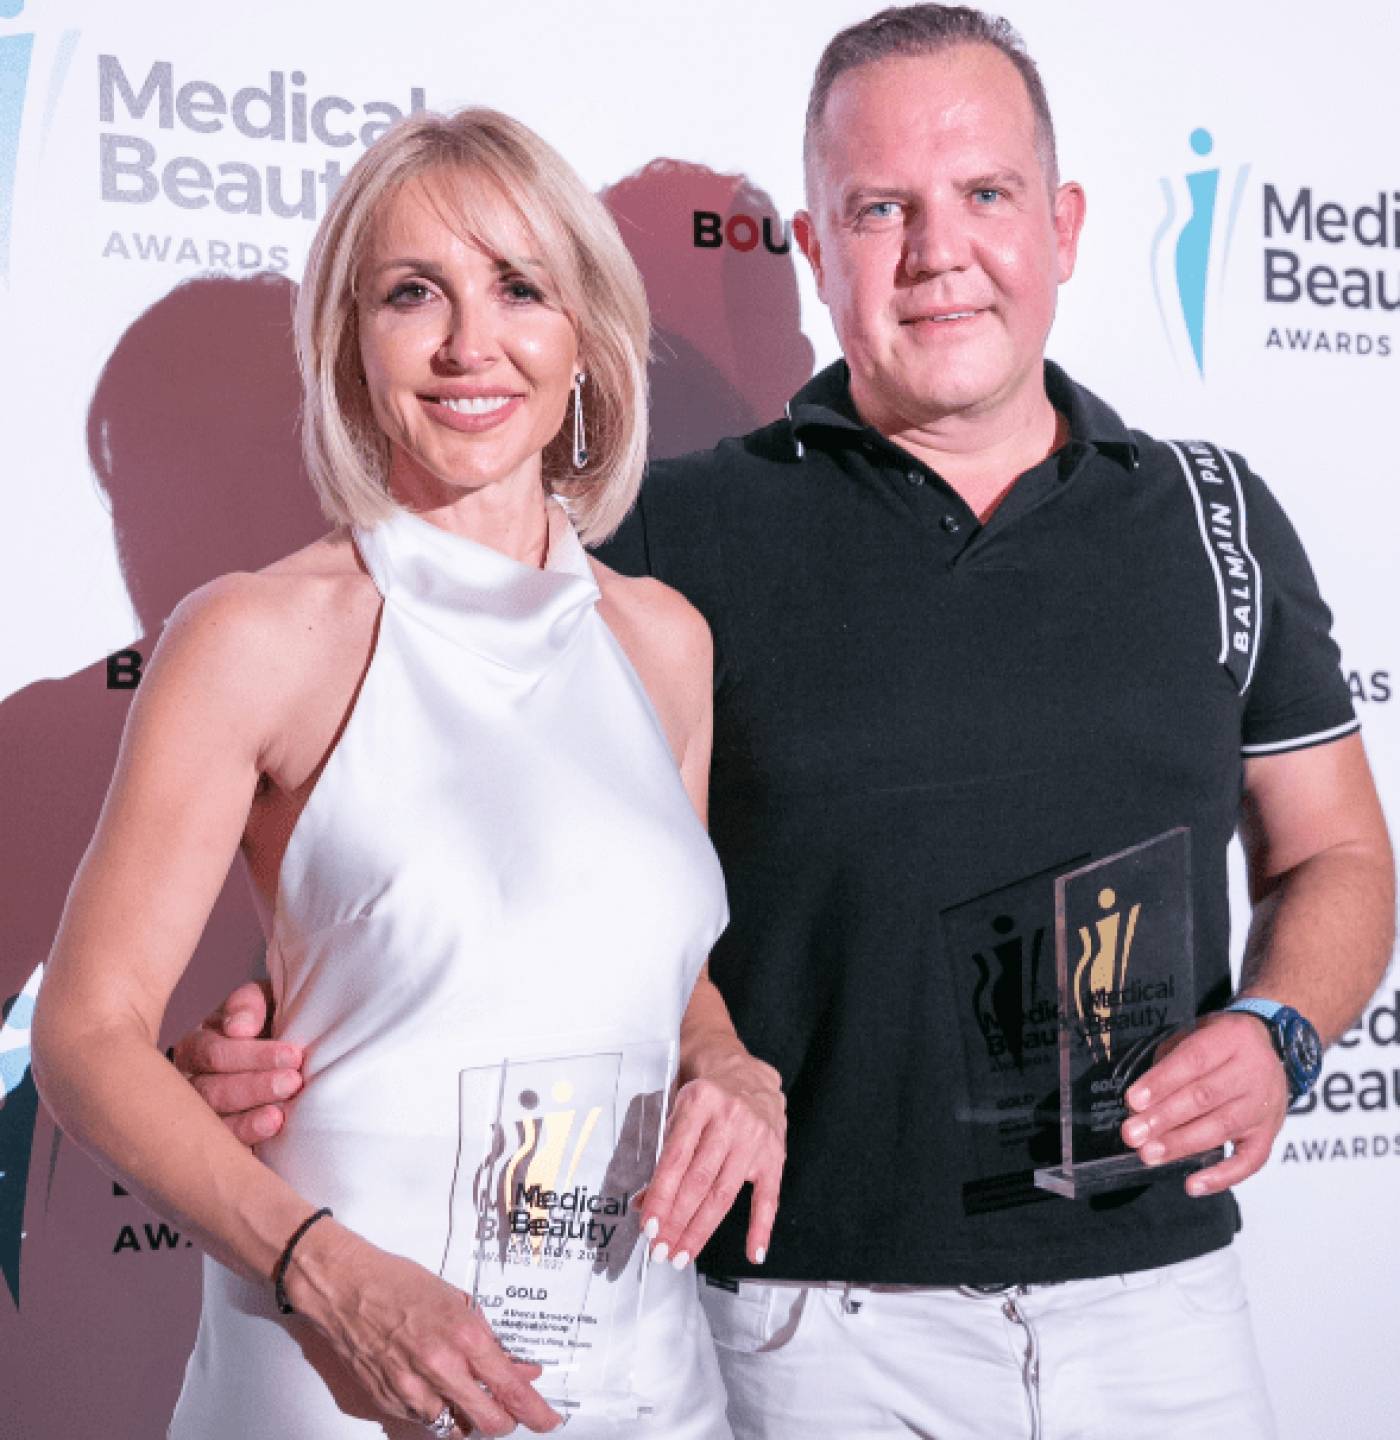 Σειρά διακρίσεων για τον Ιατρικό Όμιλο Athens Beverly Hills στα Medical Beauty Awards